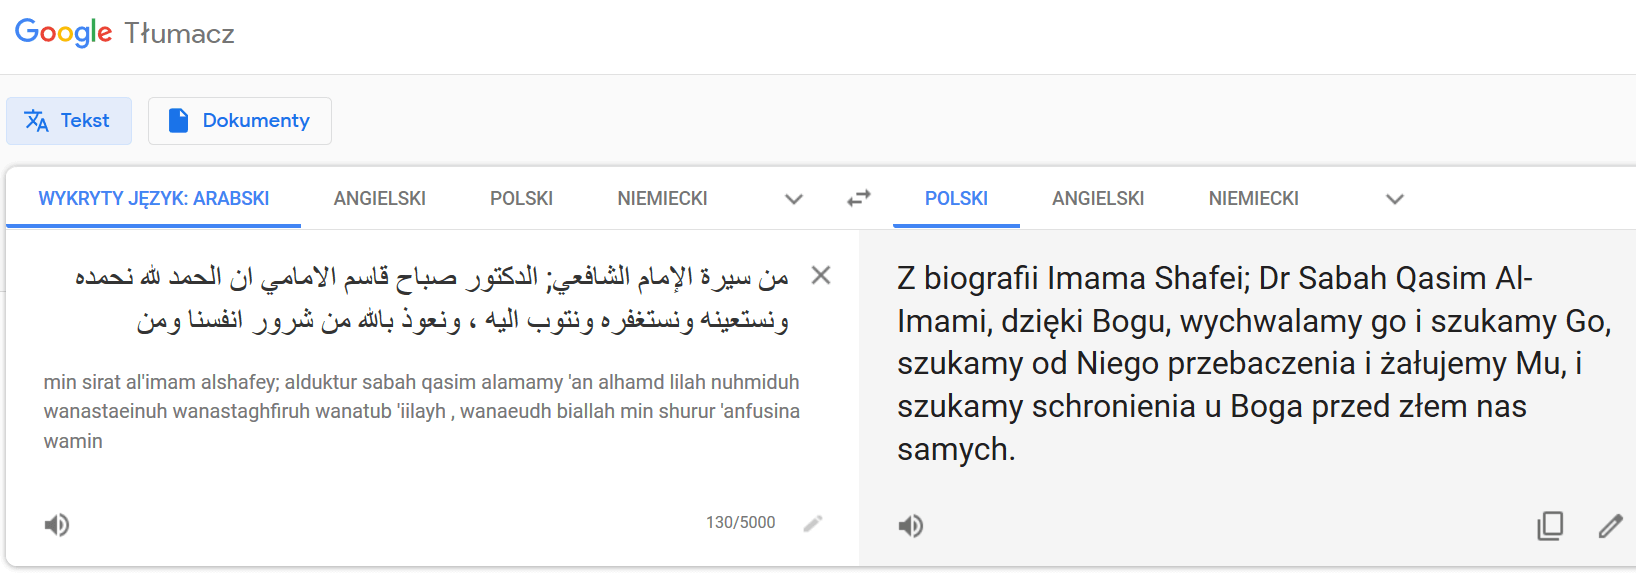 Tłumaczenie w Google Translator.